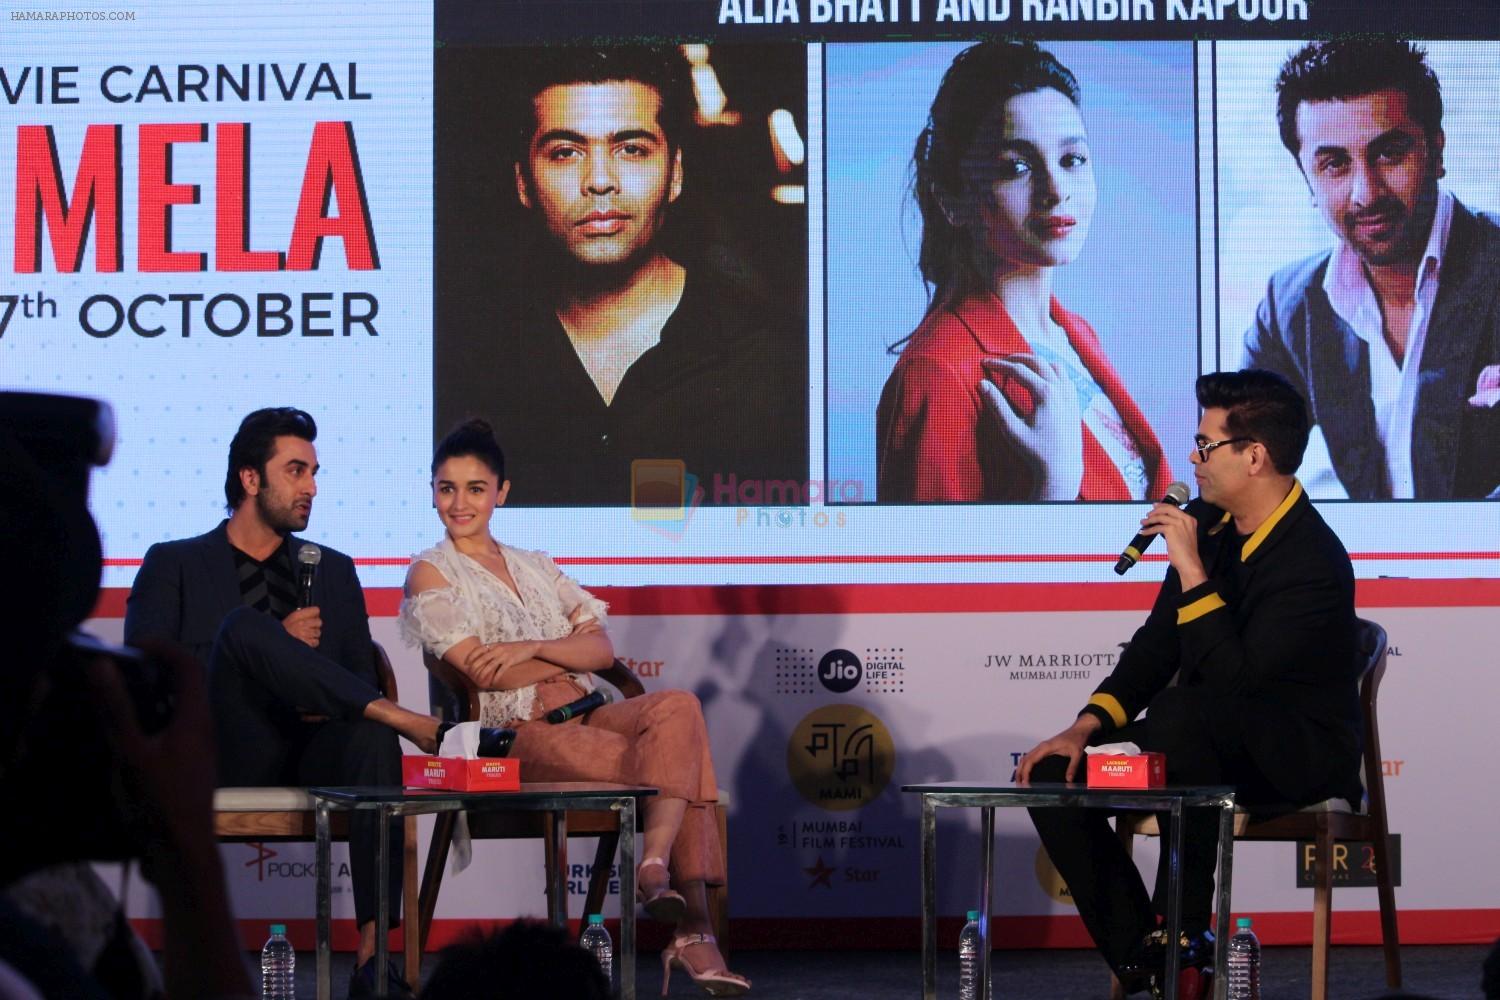 Alia BHatt, Ranbir Kapoor, Karan Johar At Jio Mami Film Mela on 7th Oct 2017